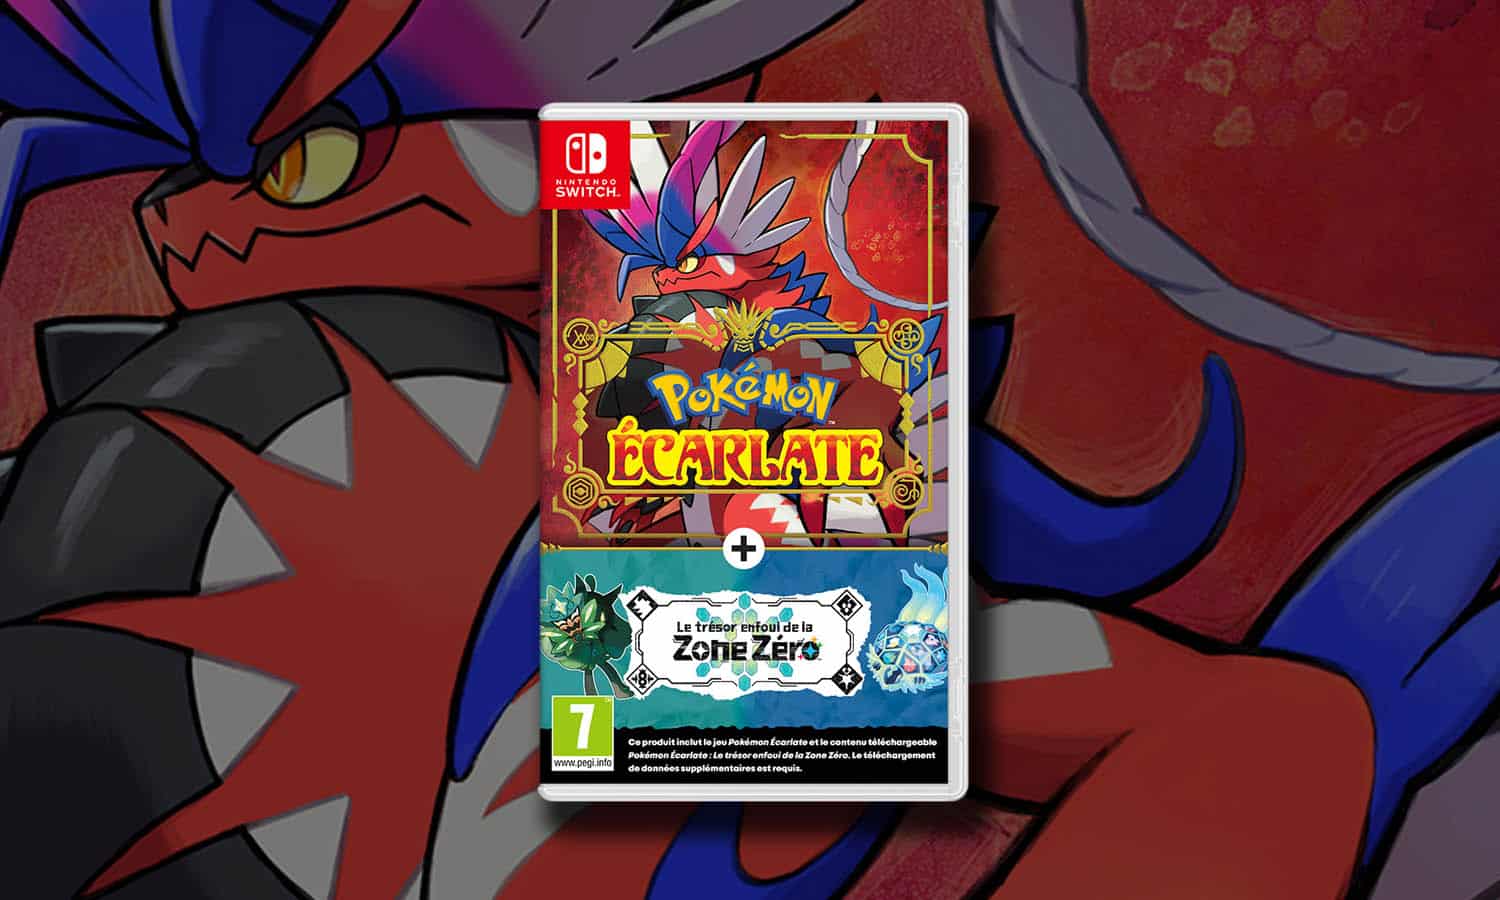 Code de téléchargement extension DLC Pokemon Violet Ecarlate Nintendo  Switch - Jeux vidéo - Achat & prix